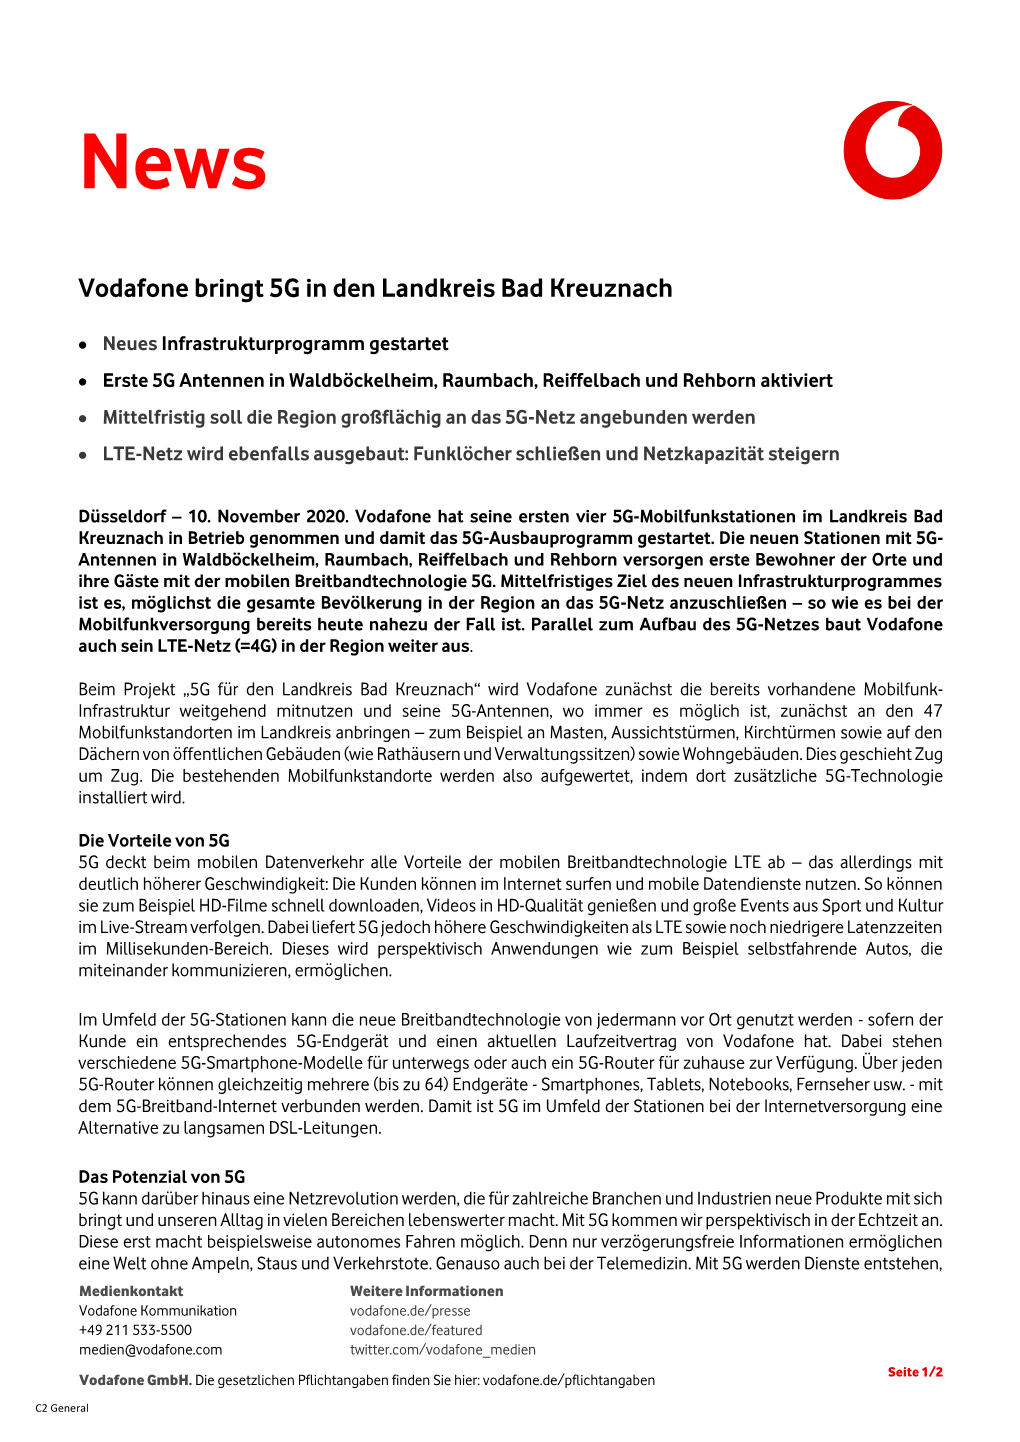 Vodafone Bringt 5G in Den Landkreis Bad Kreuznach